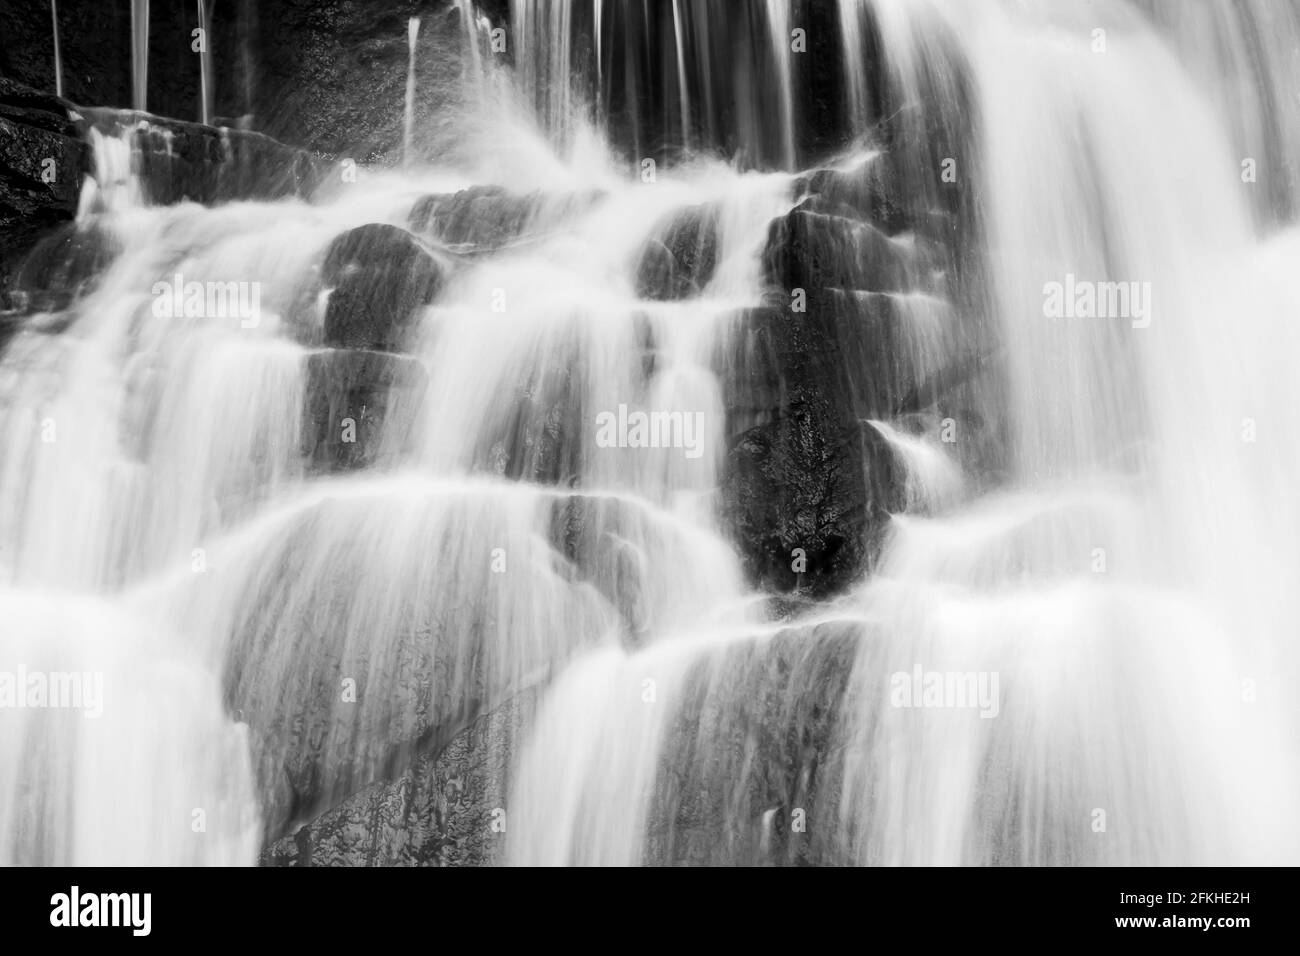 Chute d'eau pure dans une forêt tropicale, eau vive et douce tombant du précipice, couches abstraites et surface de la cascade. Monochrome. Banque D'Images